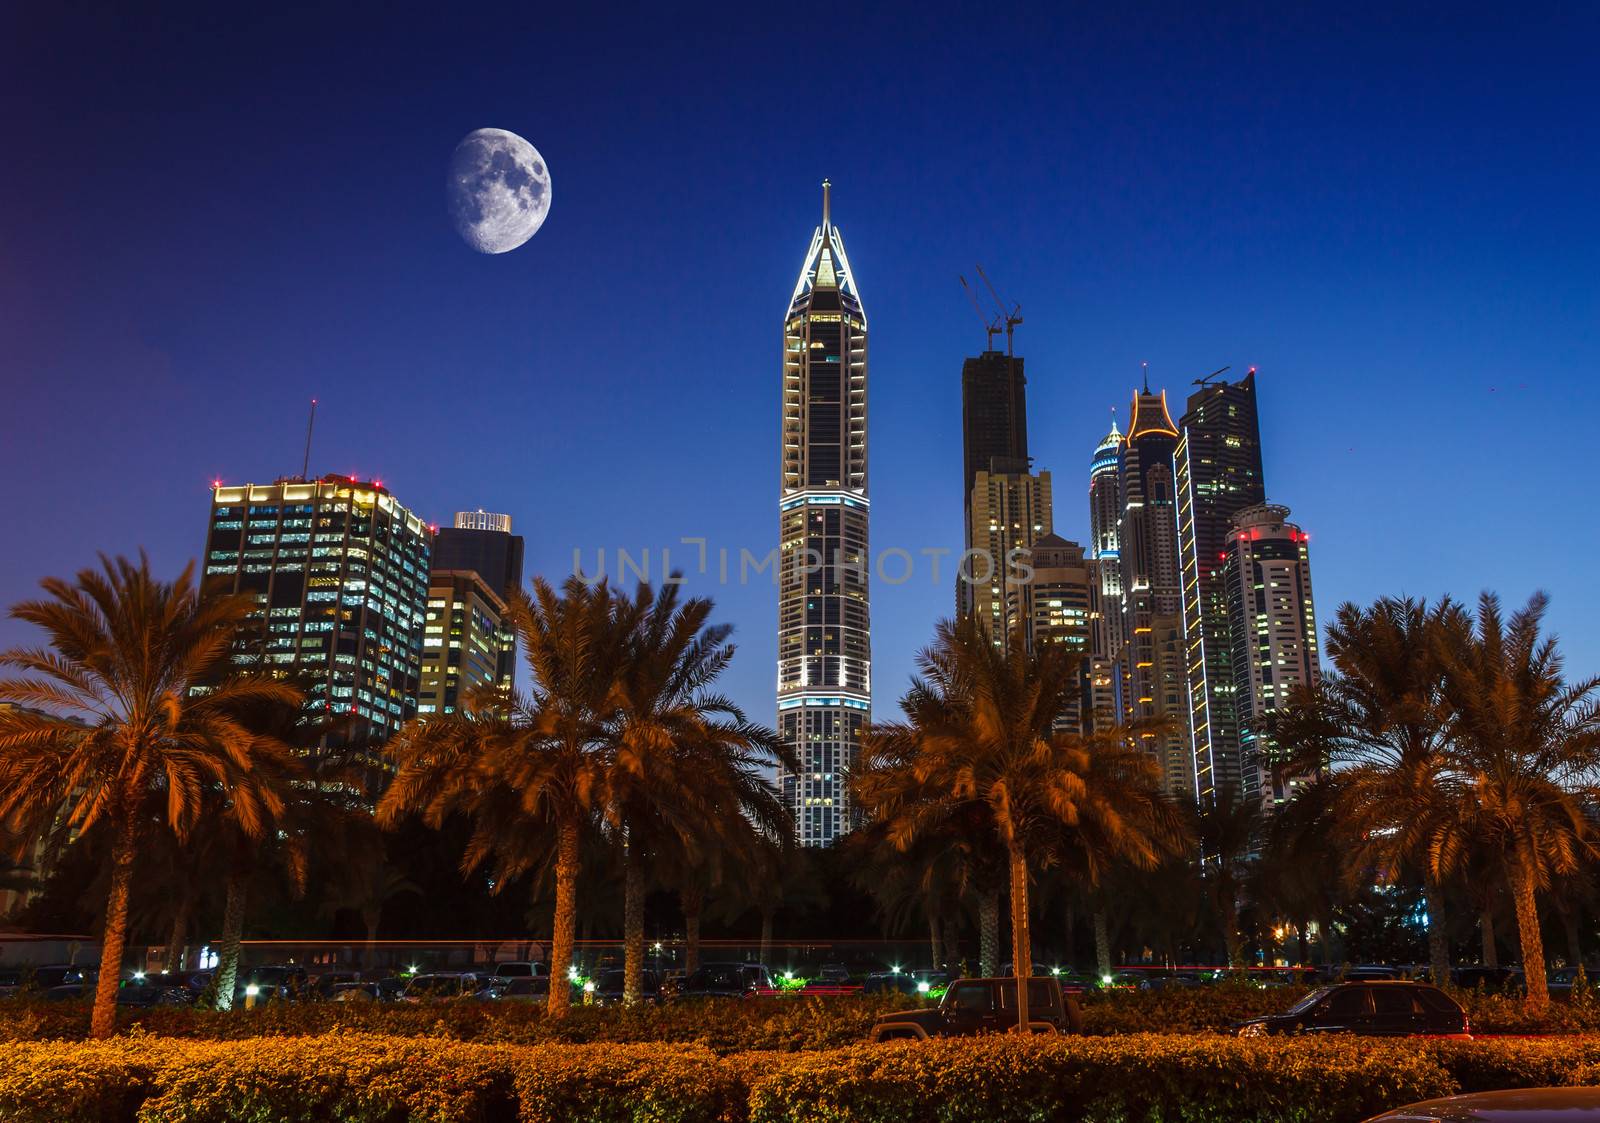 Nightlife in Dubai. UAE. November 18, 2012 by oleg_zhukov